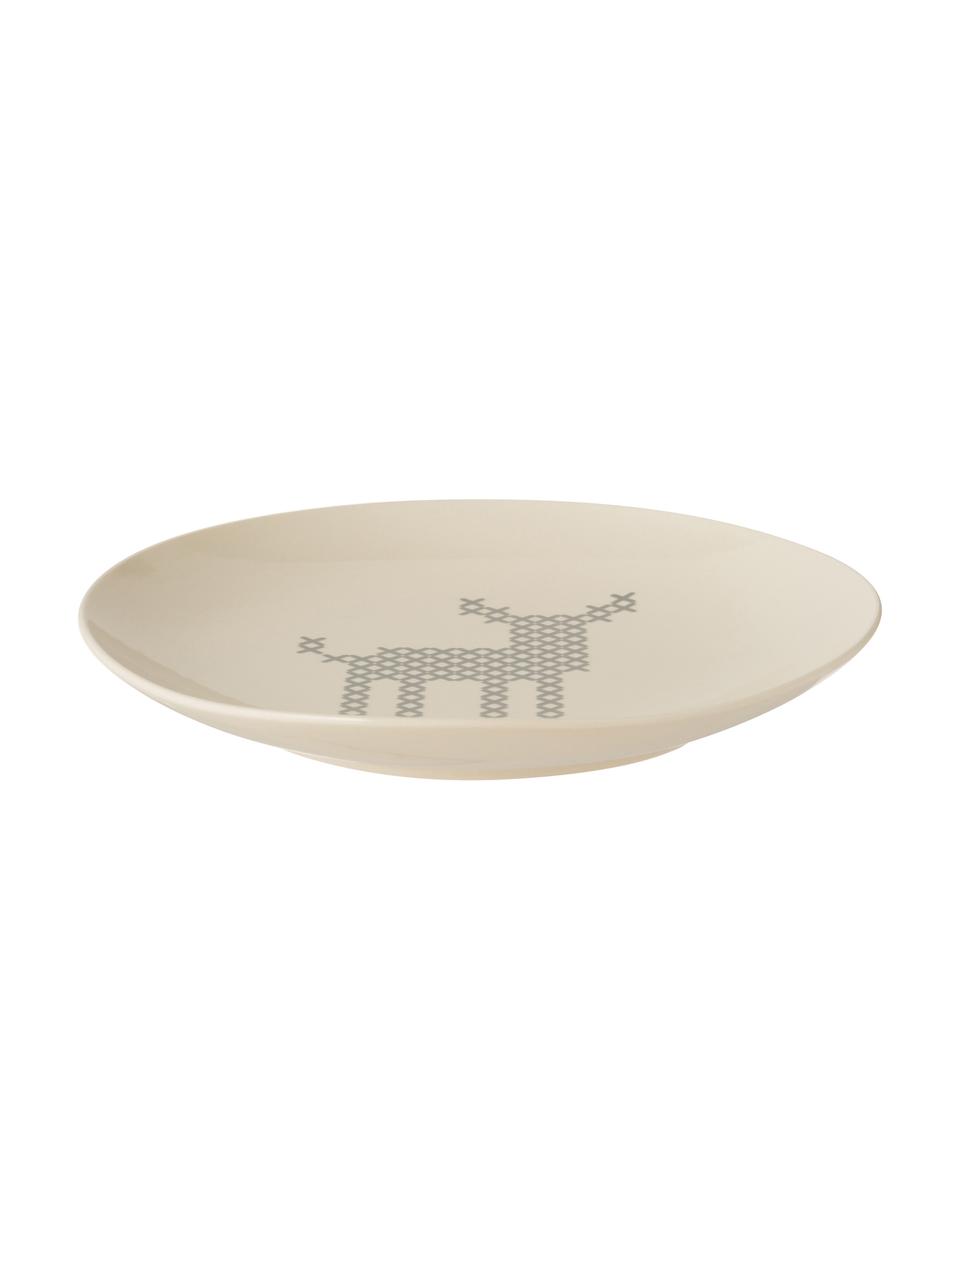 Piatto da colazione Cross, Ceramica, Bianco crema, Ø 20 cm